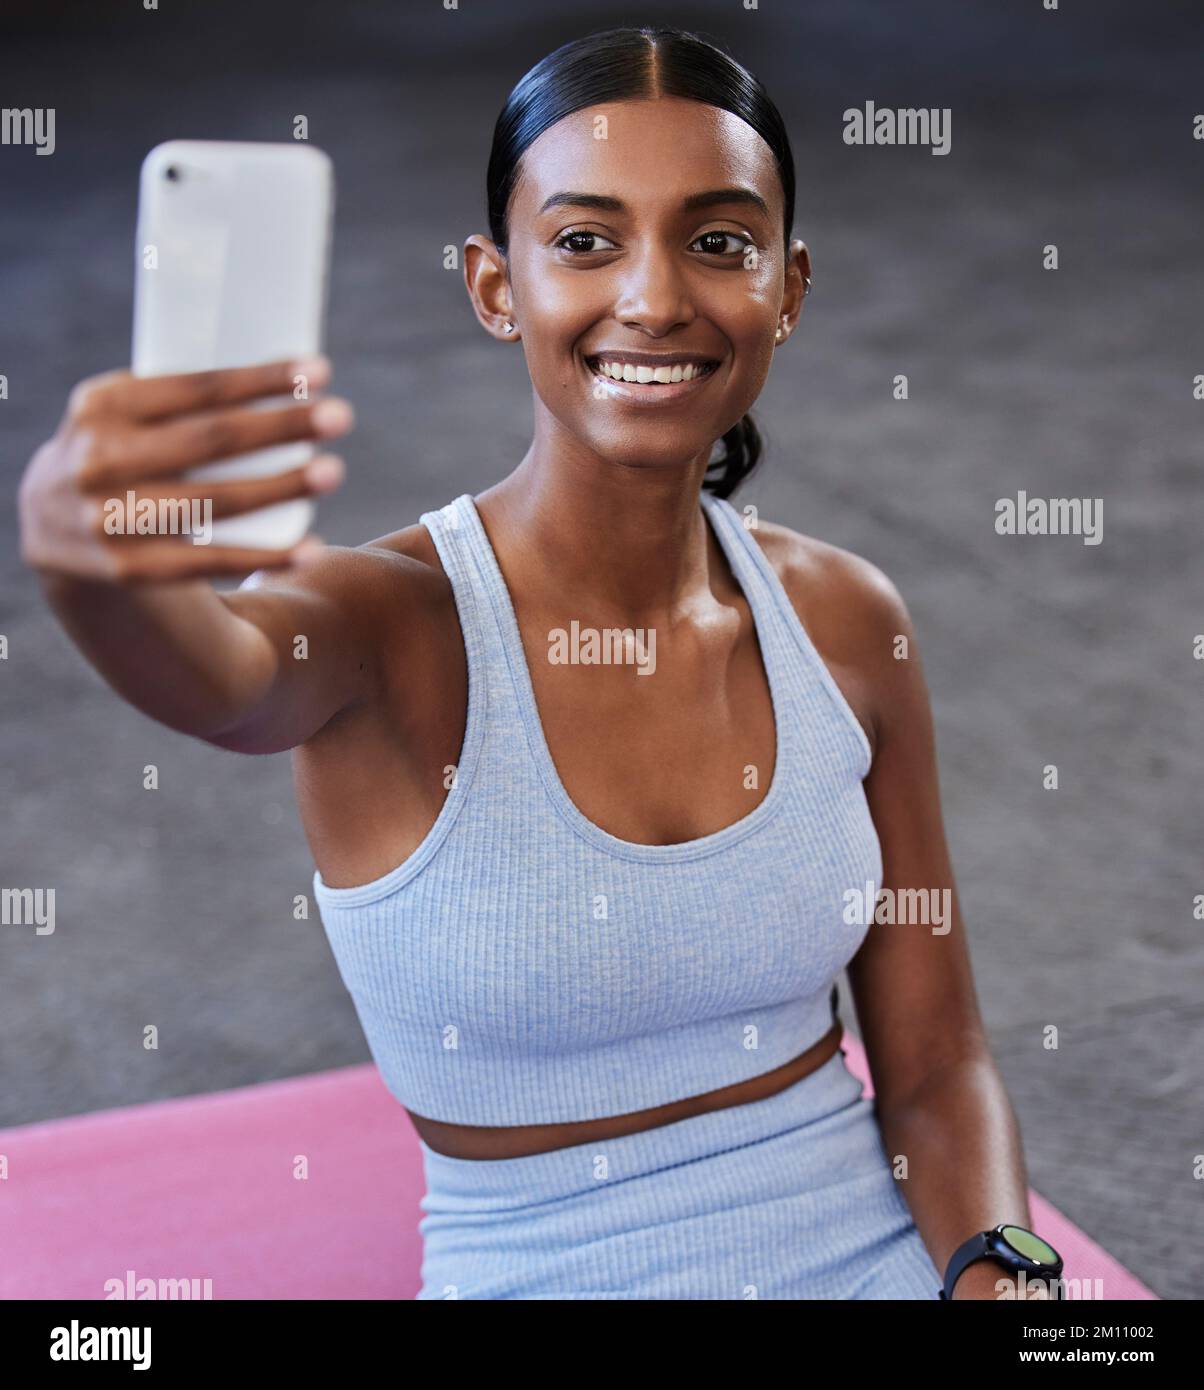 Fitness-Selfie, Sportfläche und Frau mit Post in sozialen Medien, Aktualisierung von Profilbildern oder Blog auf der Wellness-Website in der mobilen App. Smartphone-Fotografie Stockfoto